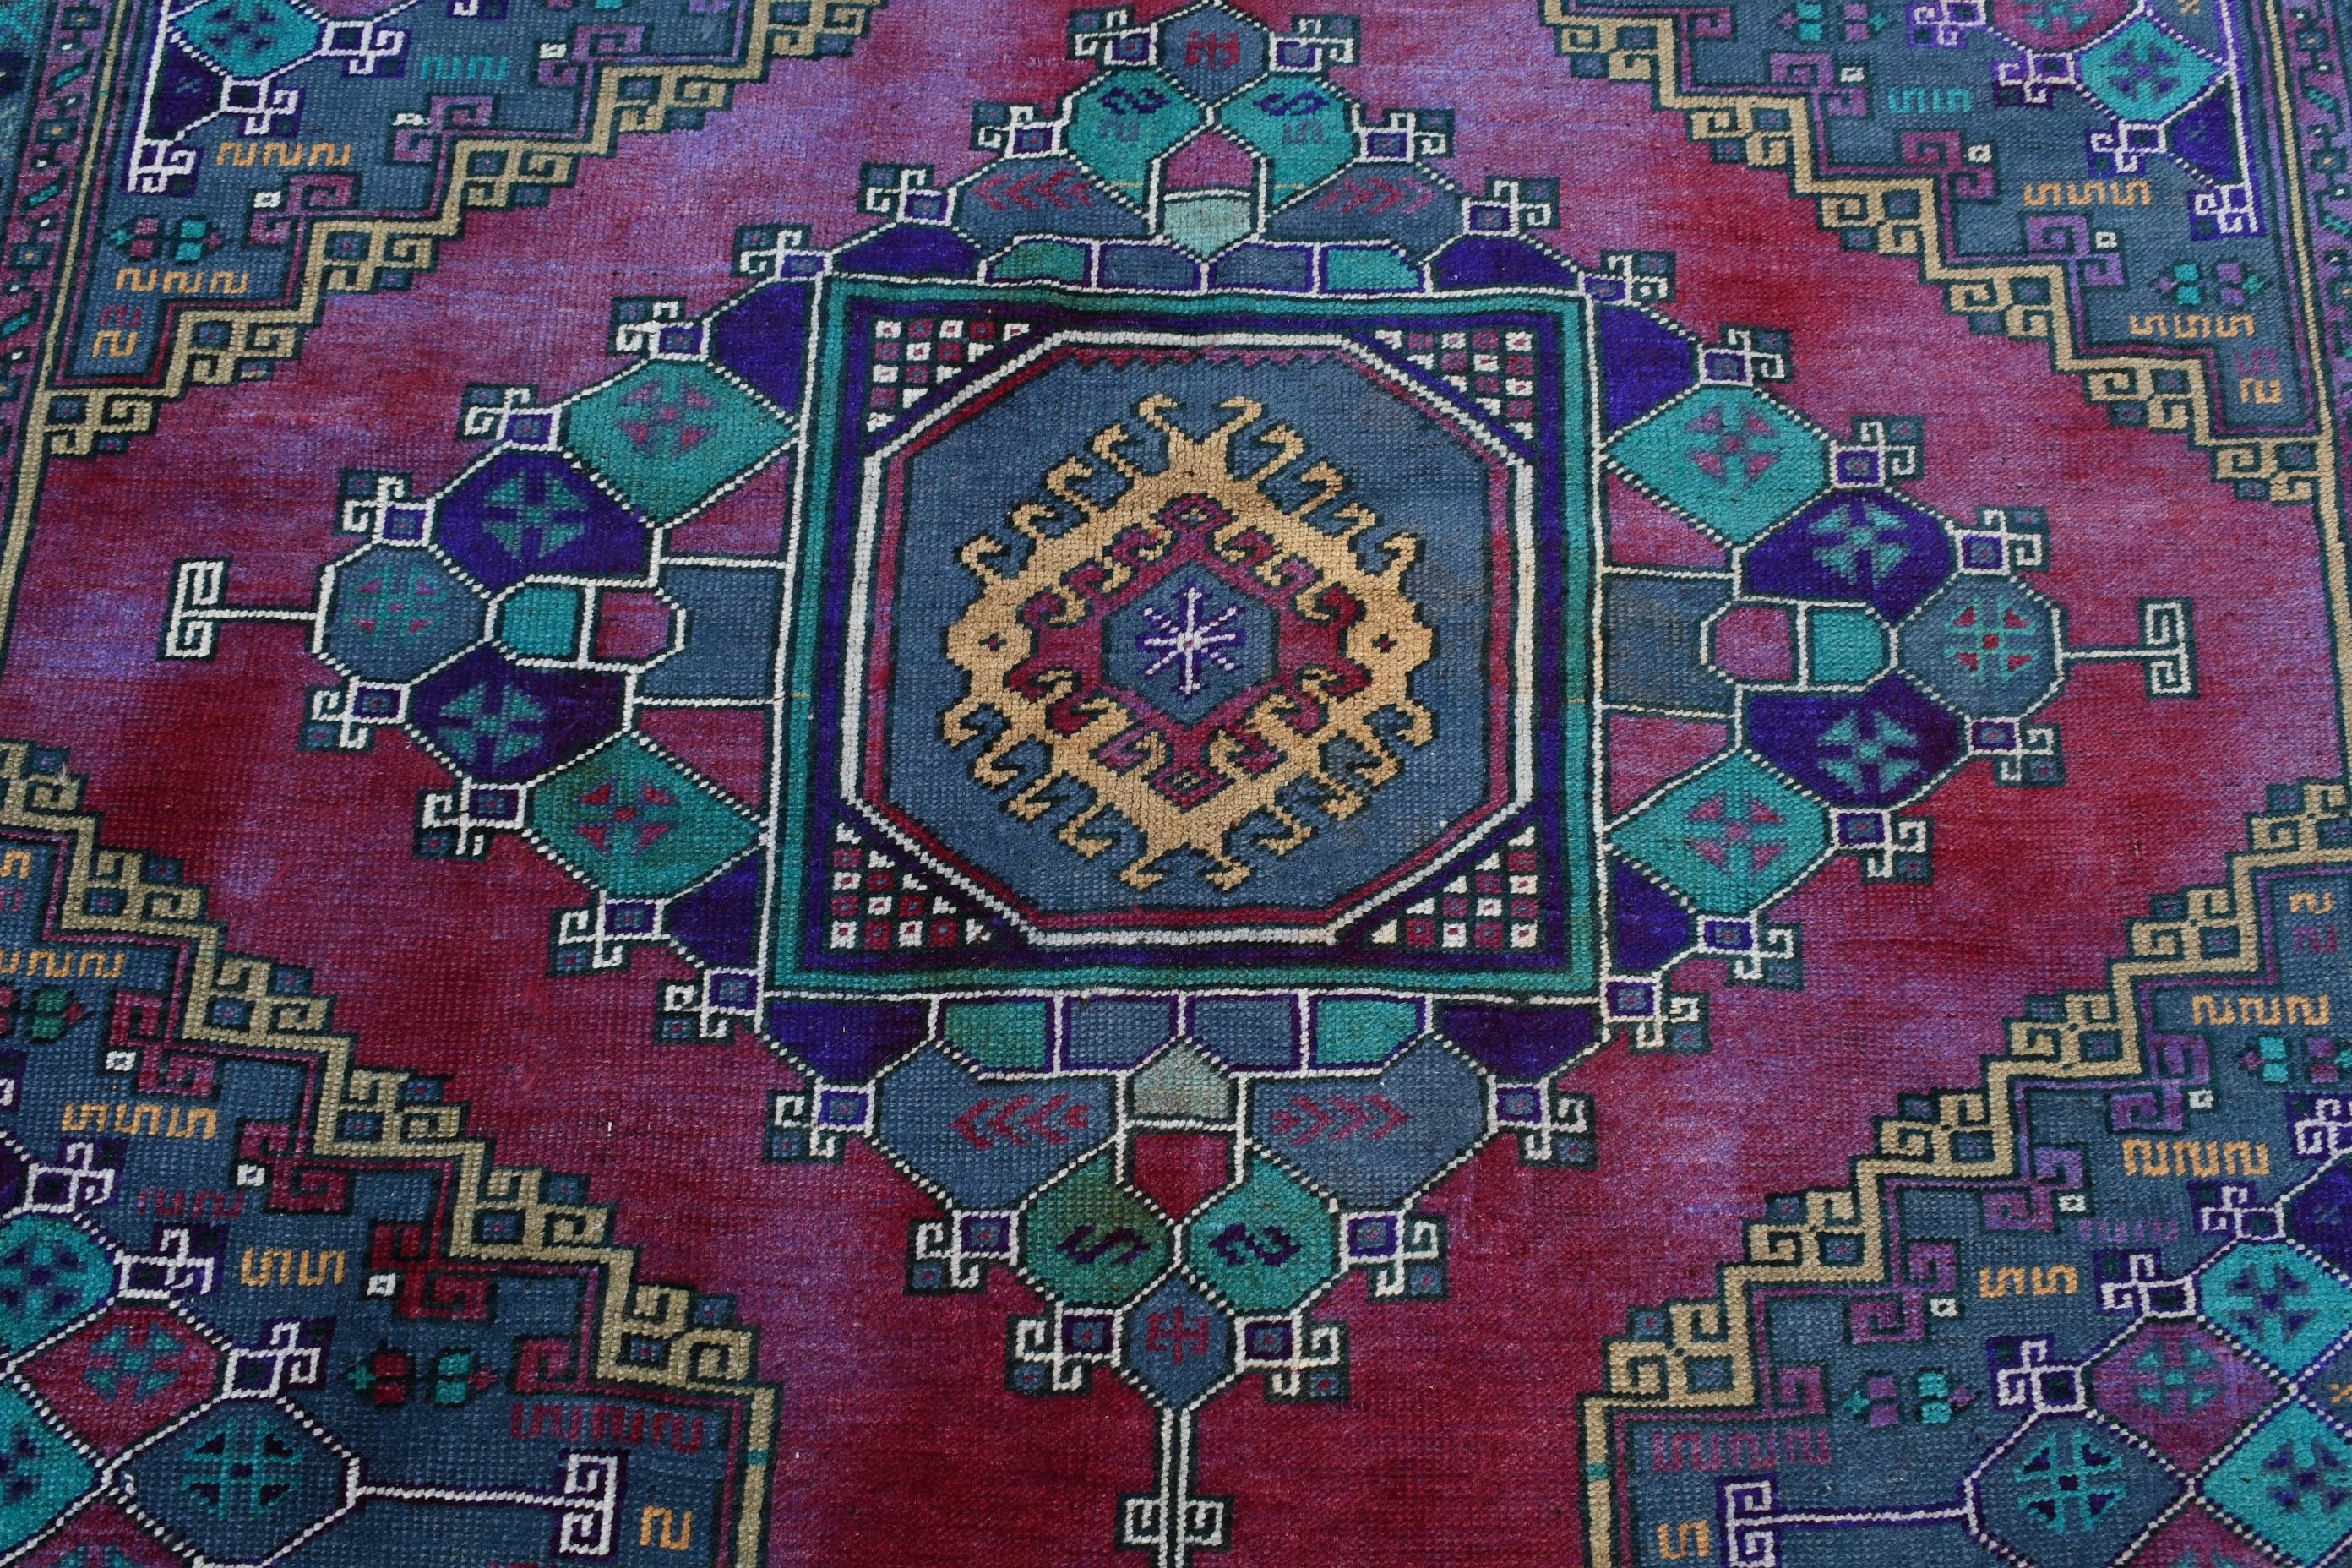 Kitchen Rug, Outdoor Rugs, Bedroom Rugs, Living Room Rugs, 5.3x8 ft Large Rug, Vintage Rug, Purple Moroccan Rugs, Turkish Rug, Oriental Rug